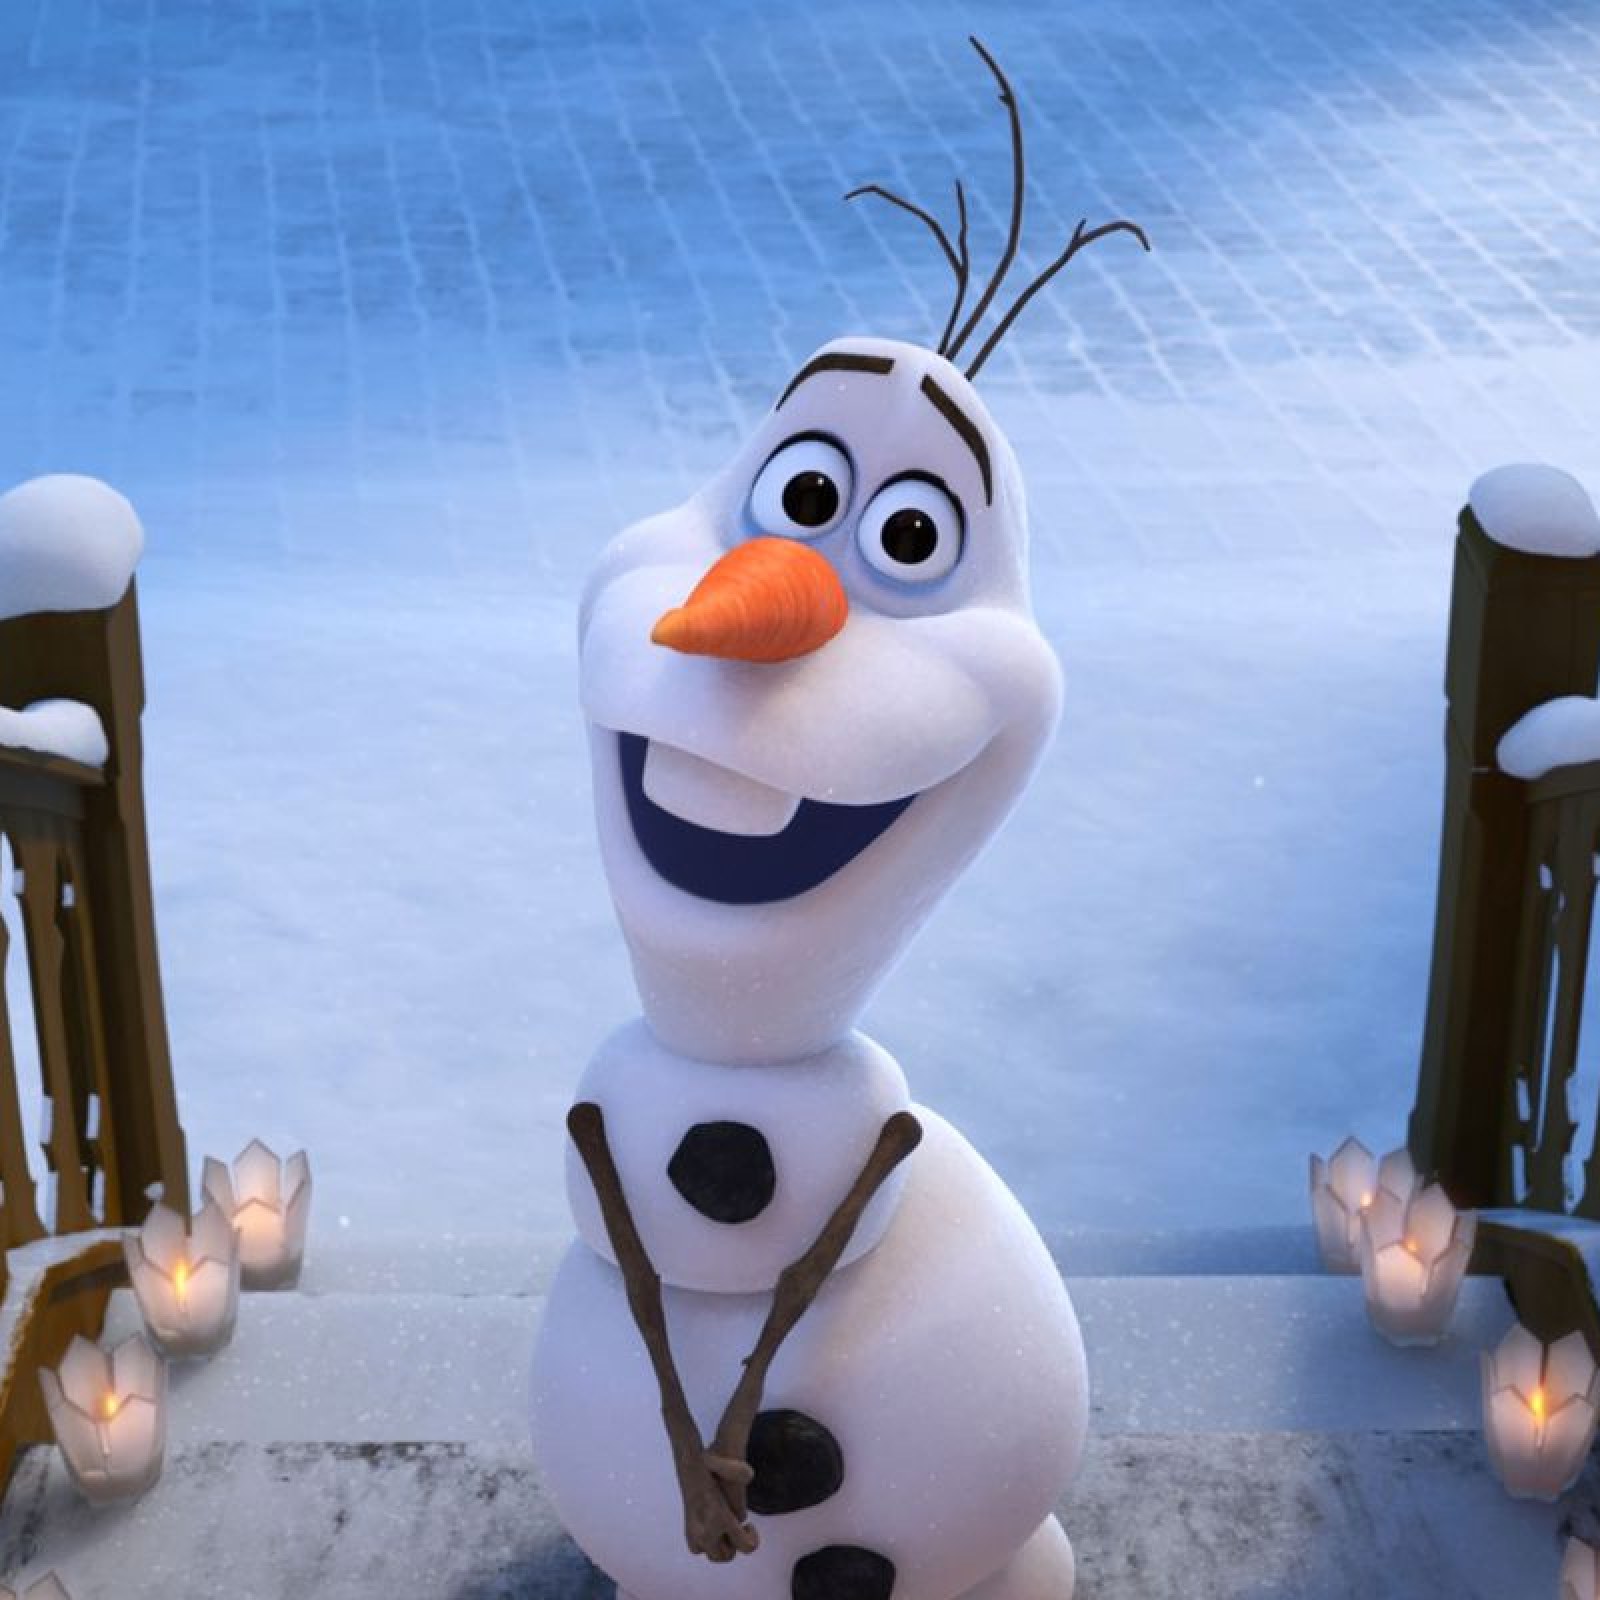 esfera Ponte de pie en su lugar escaldadura Frozen 2' End Credits Scene: Is There a Scene After the Credits of the  Disney Movie?